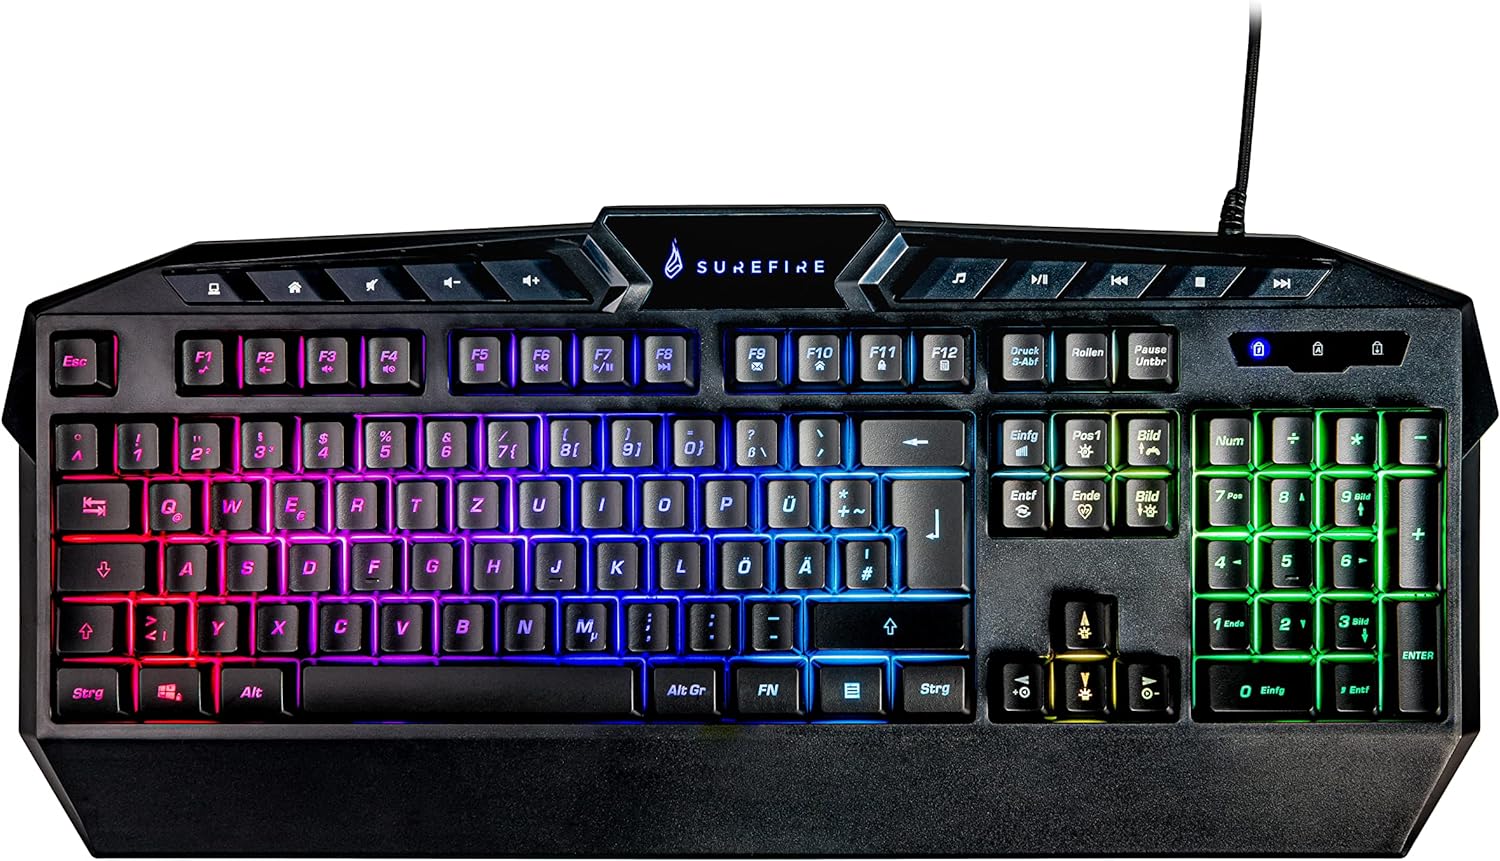 Surefire KingPin RGB Gaming Multimedia QWERTZ Keyboard - New